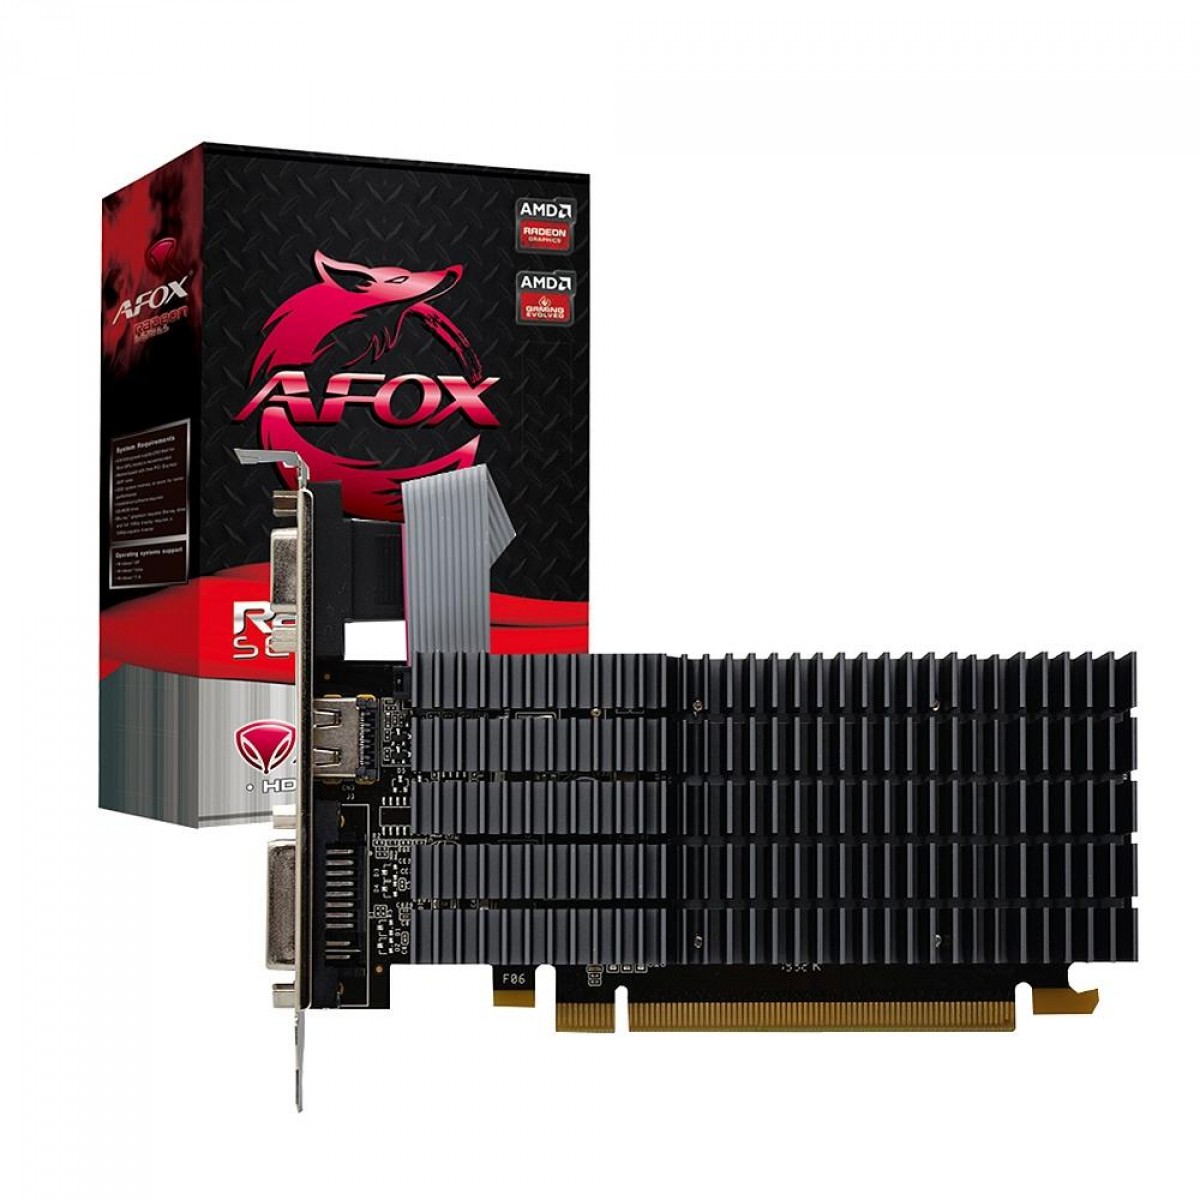 Placa de Vídeo Afox Radeon R5 230, 2GB, DDR3, AFR5230-2048D3L9-V2